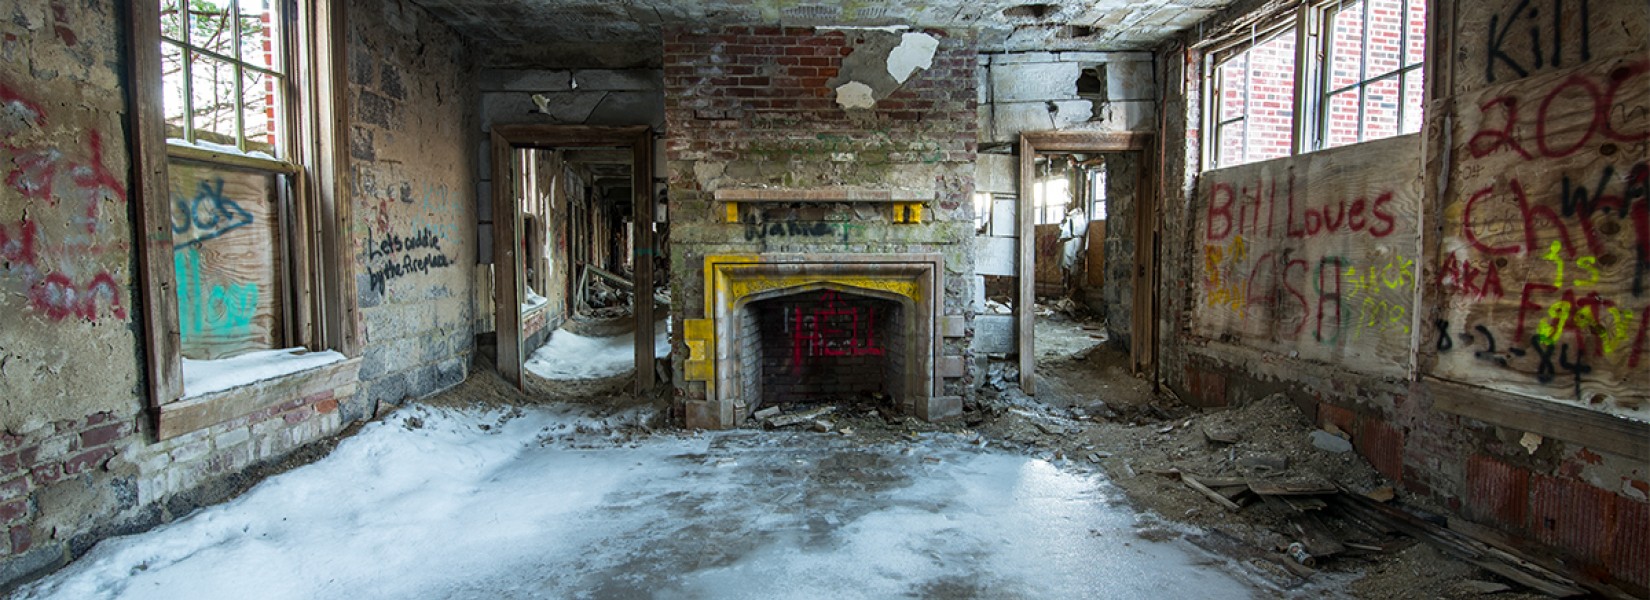 Le sanatorium abandonné de Saratoga